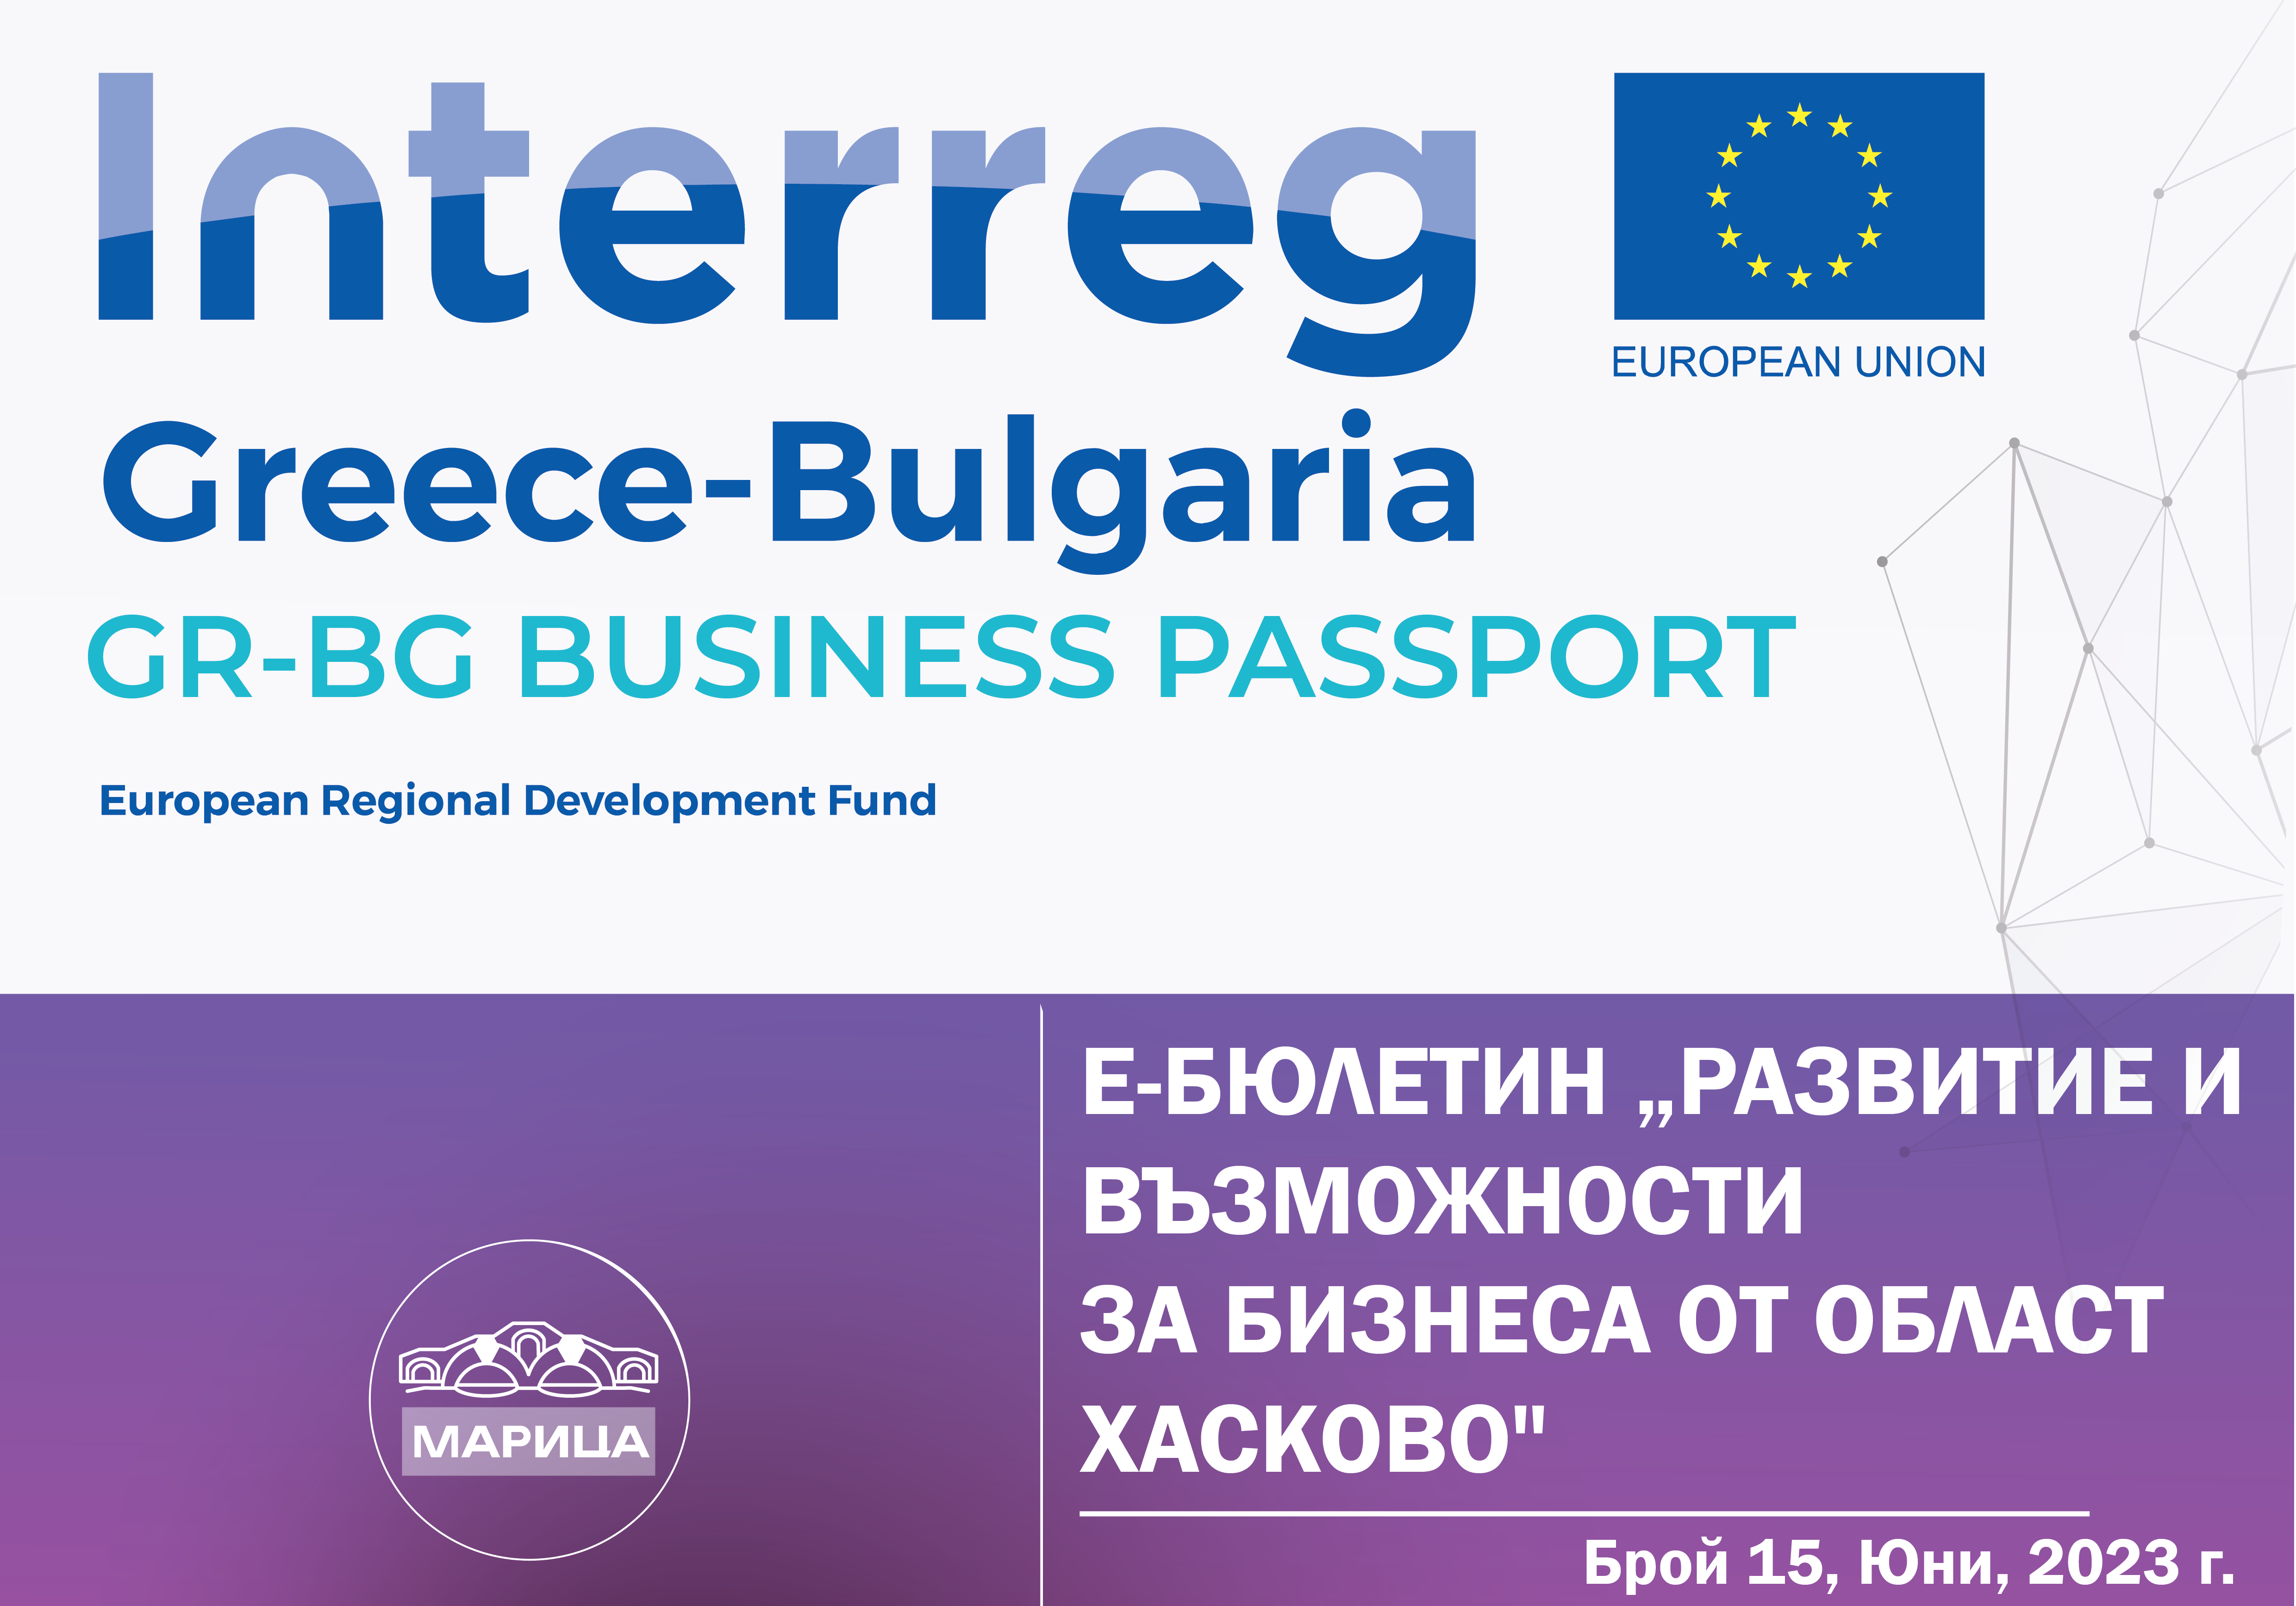 е-бюлетин „Развитие и възможности за бизнеса от област Хасково“ по проект с акроним „GR-BG BUSINESS PASSPORT, брой 15